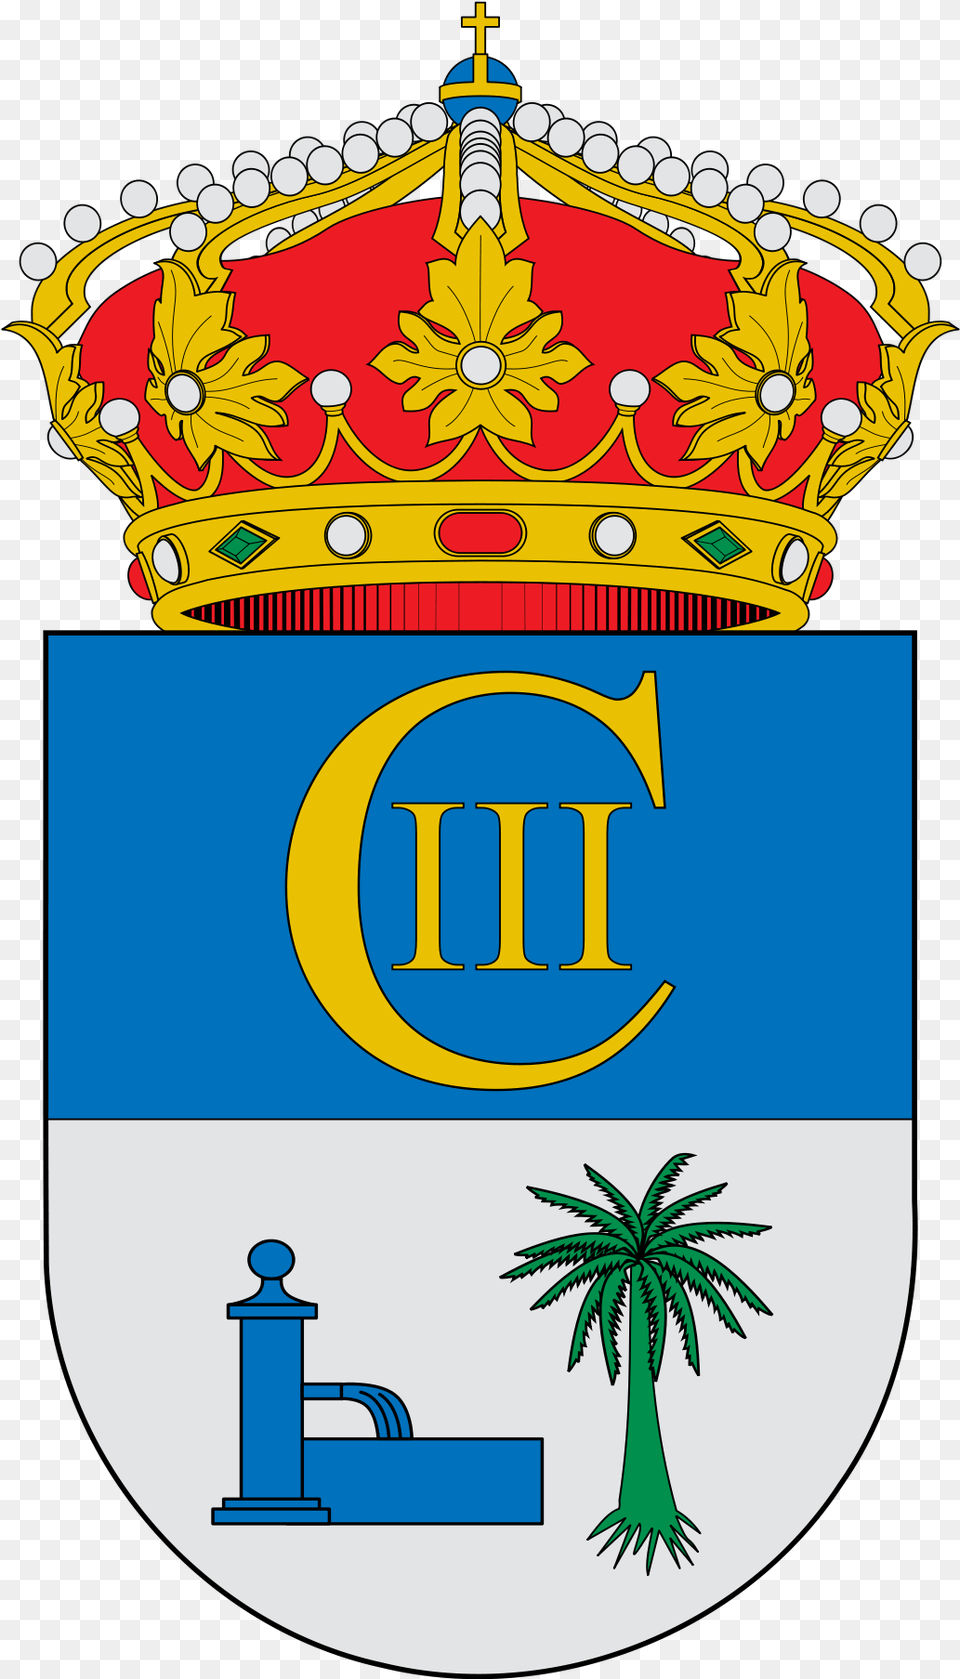 Escudo Monforte De Lemos, Plant, Logo Free Transparent Png